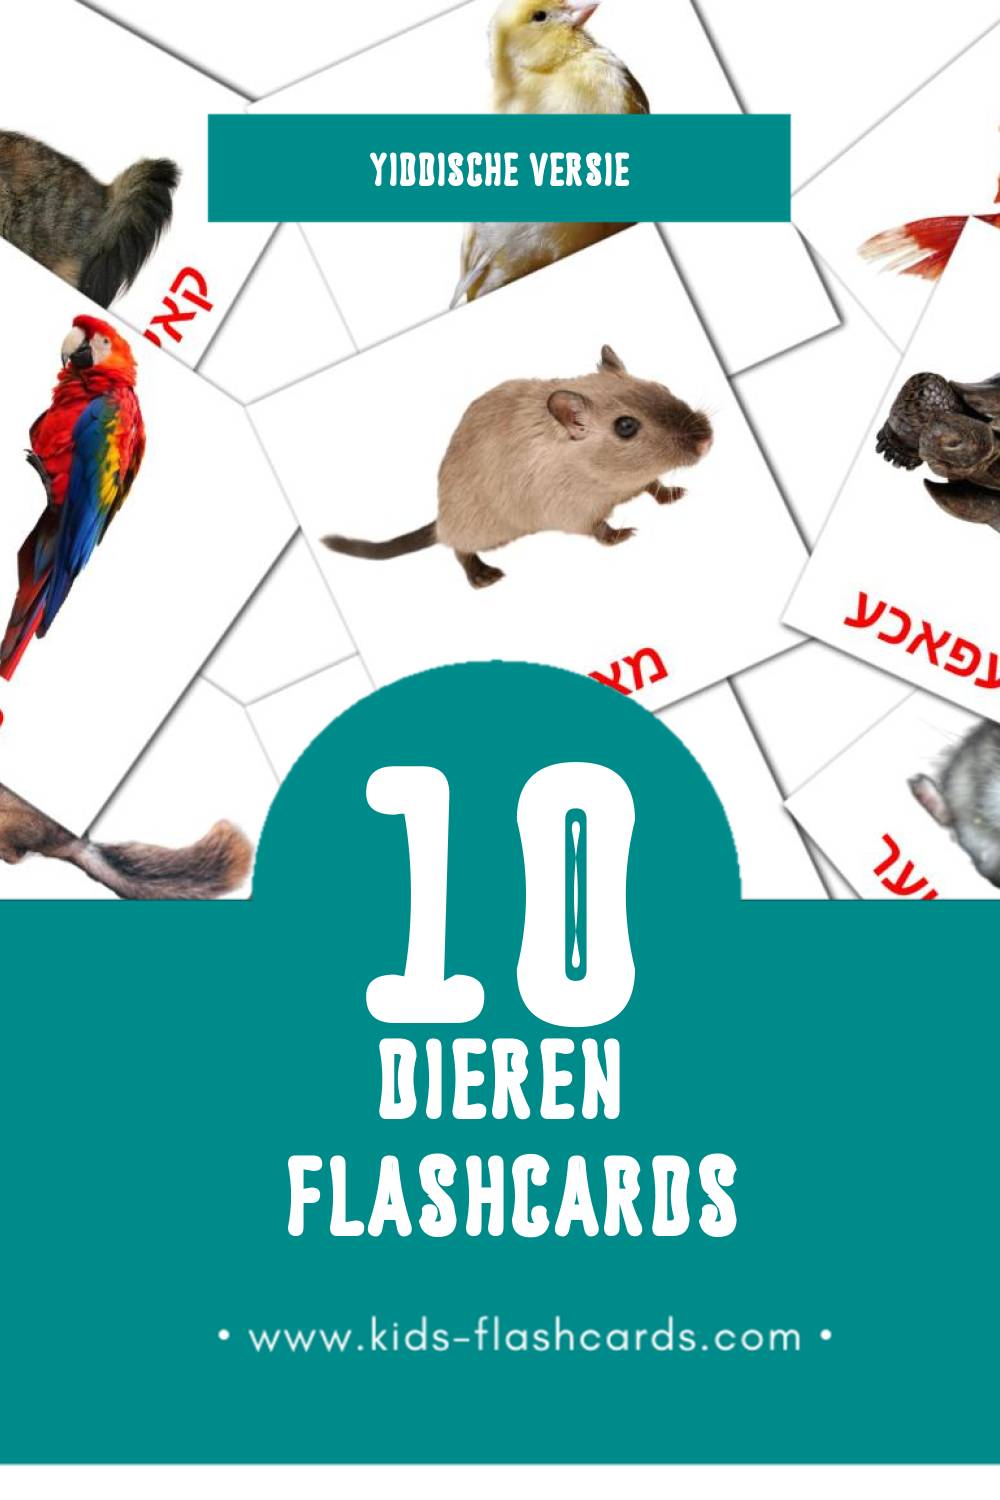 Visuele חיות Flashcards voor Kleuters (10 kaarten in het Yiddisch)